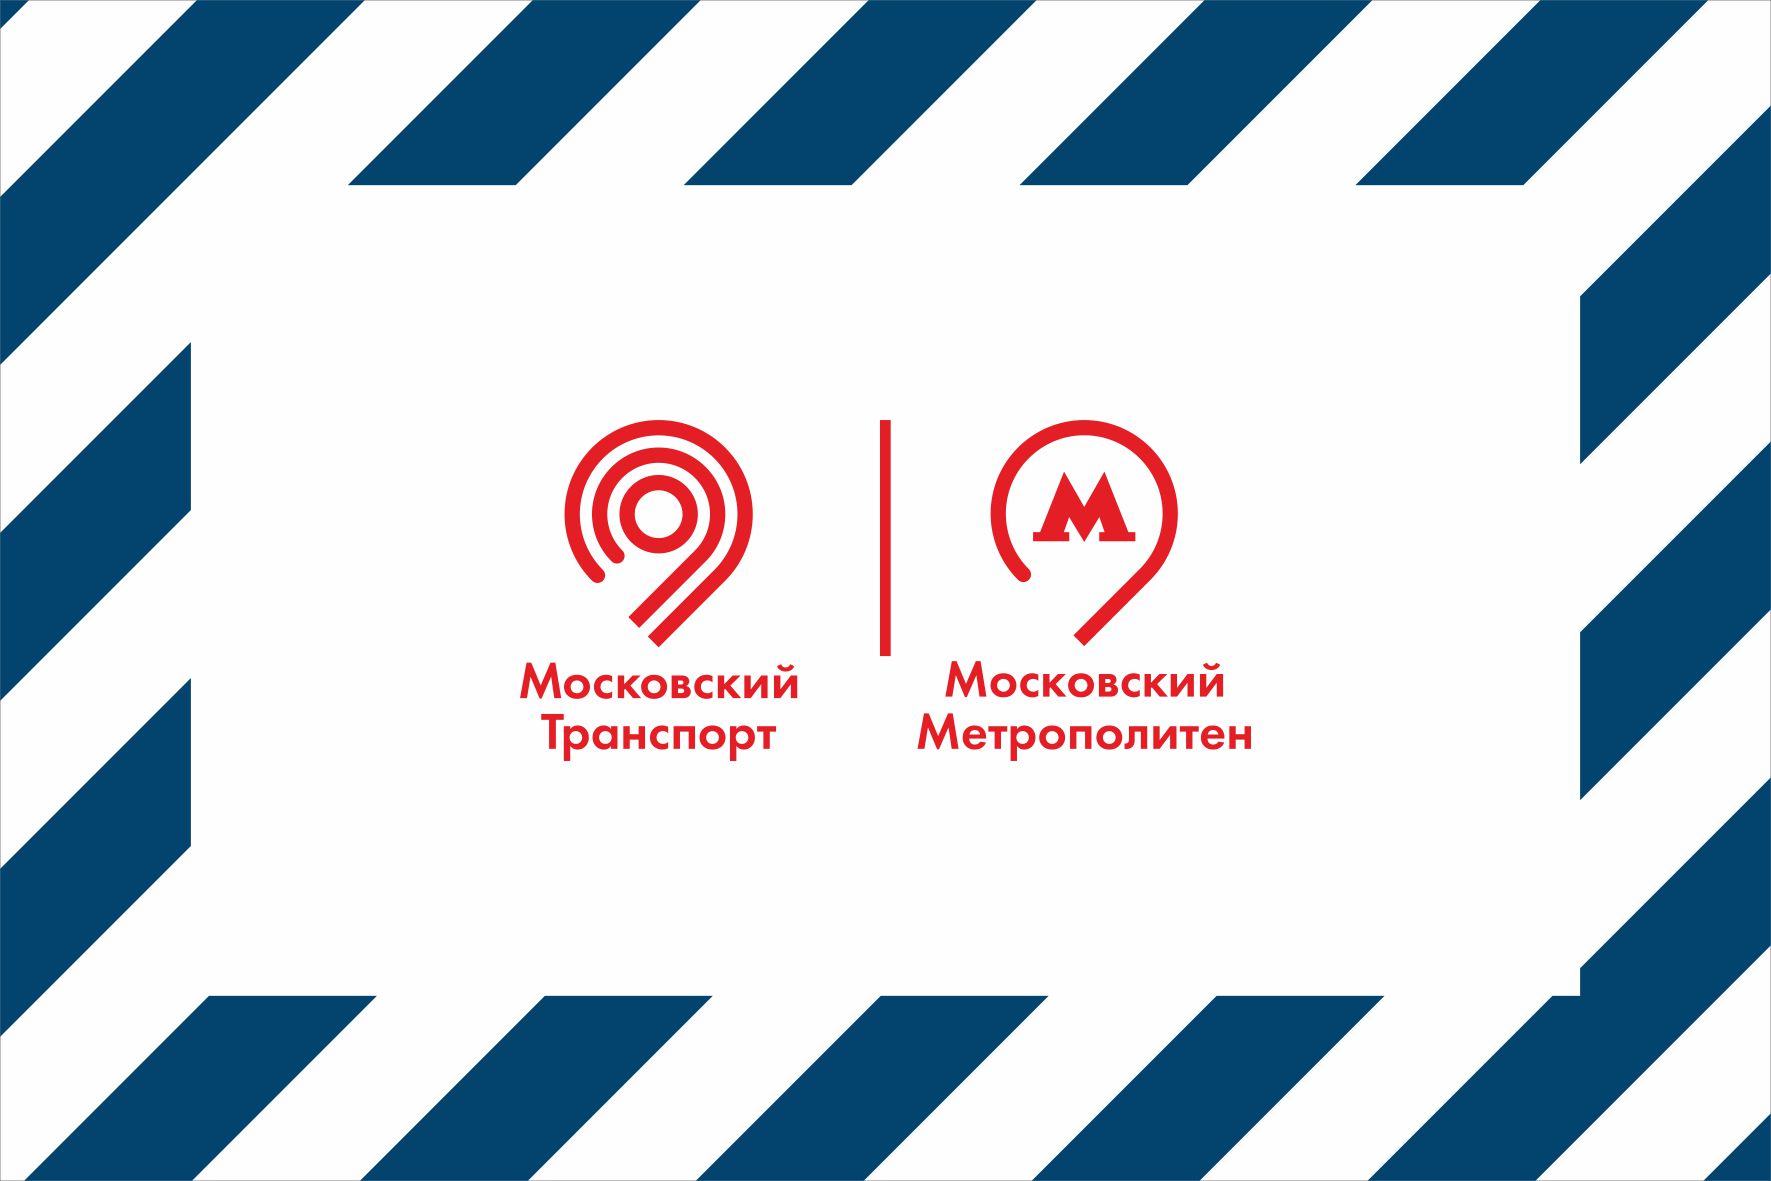 Московский транспорт и московский метрополитен